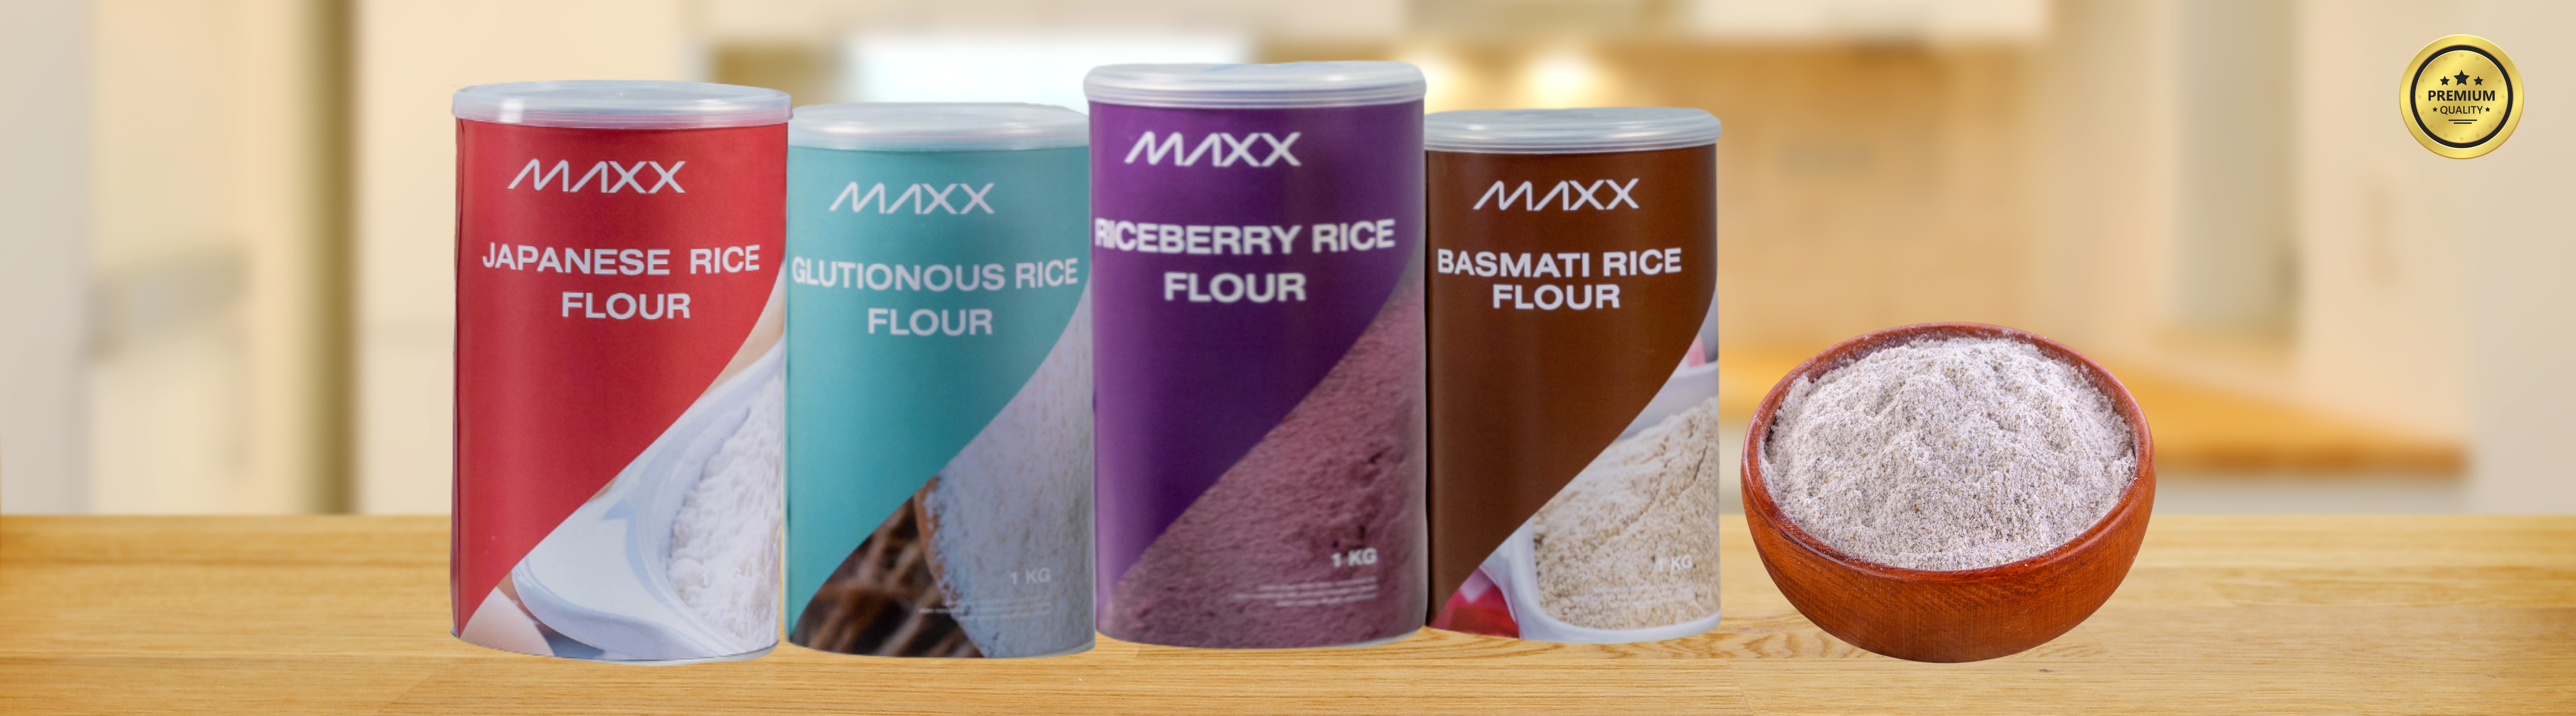 Maxx Rice Flour4